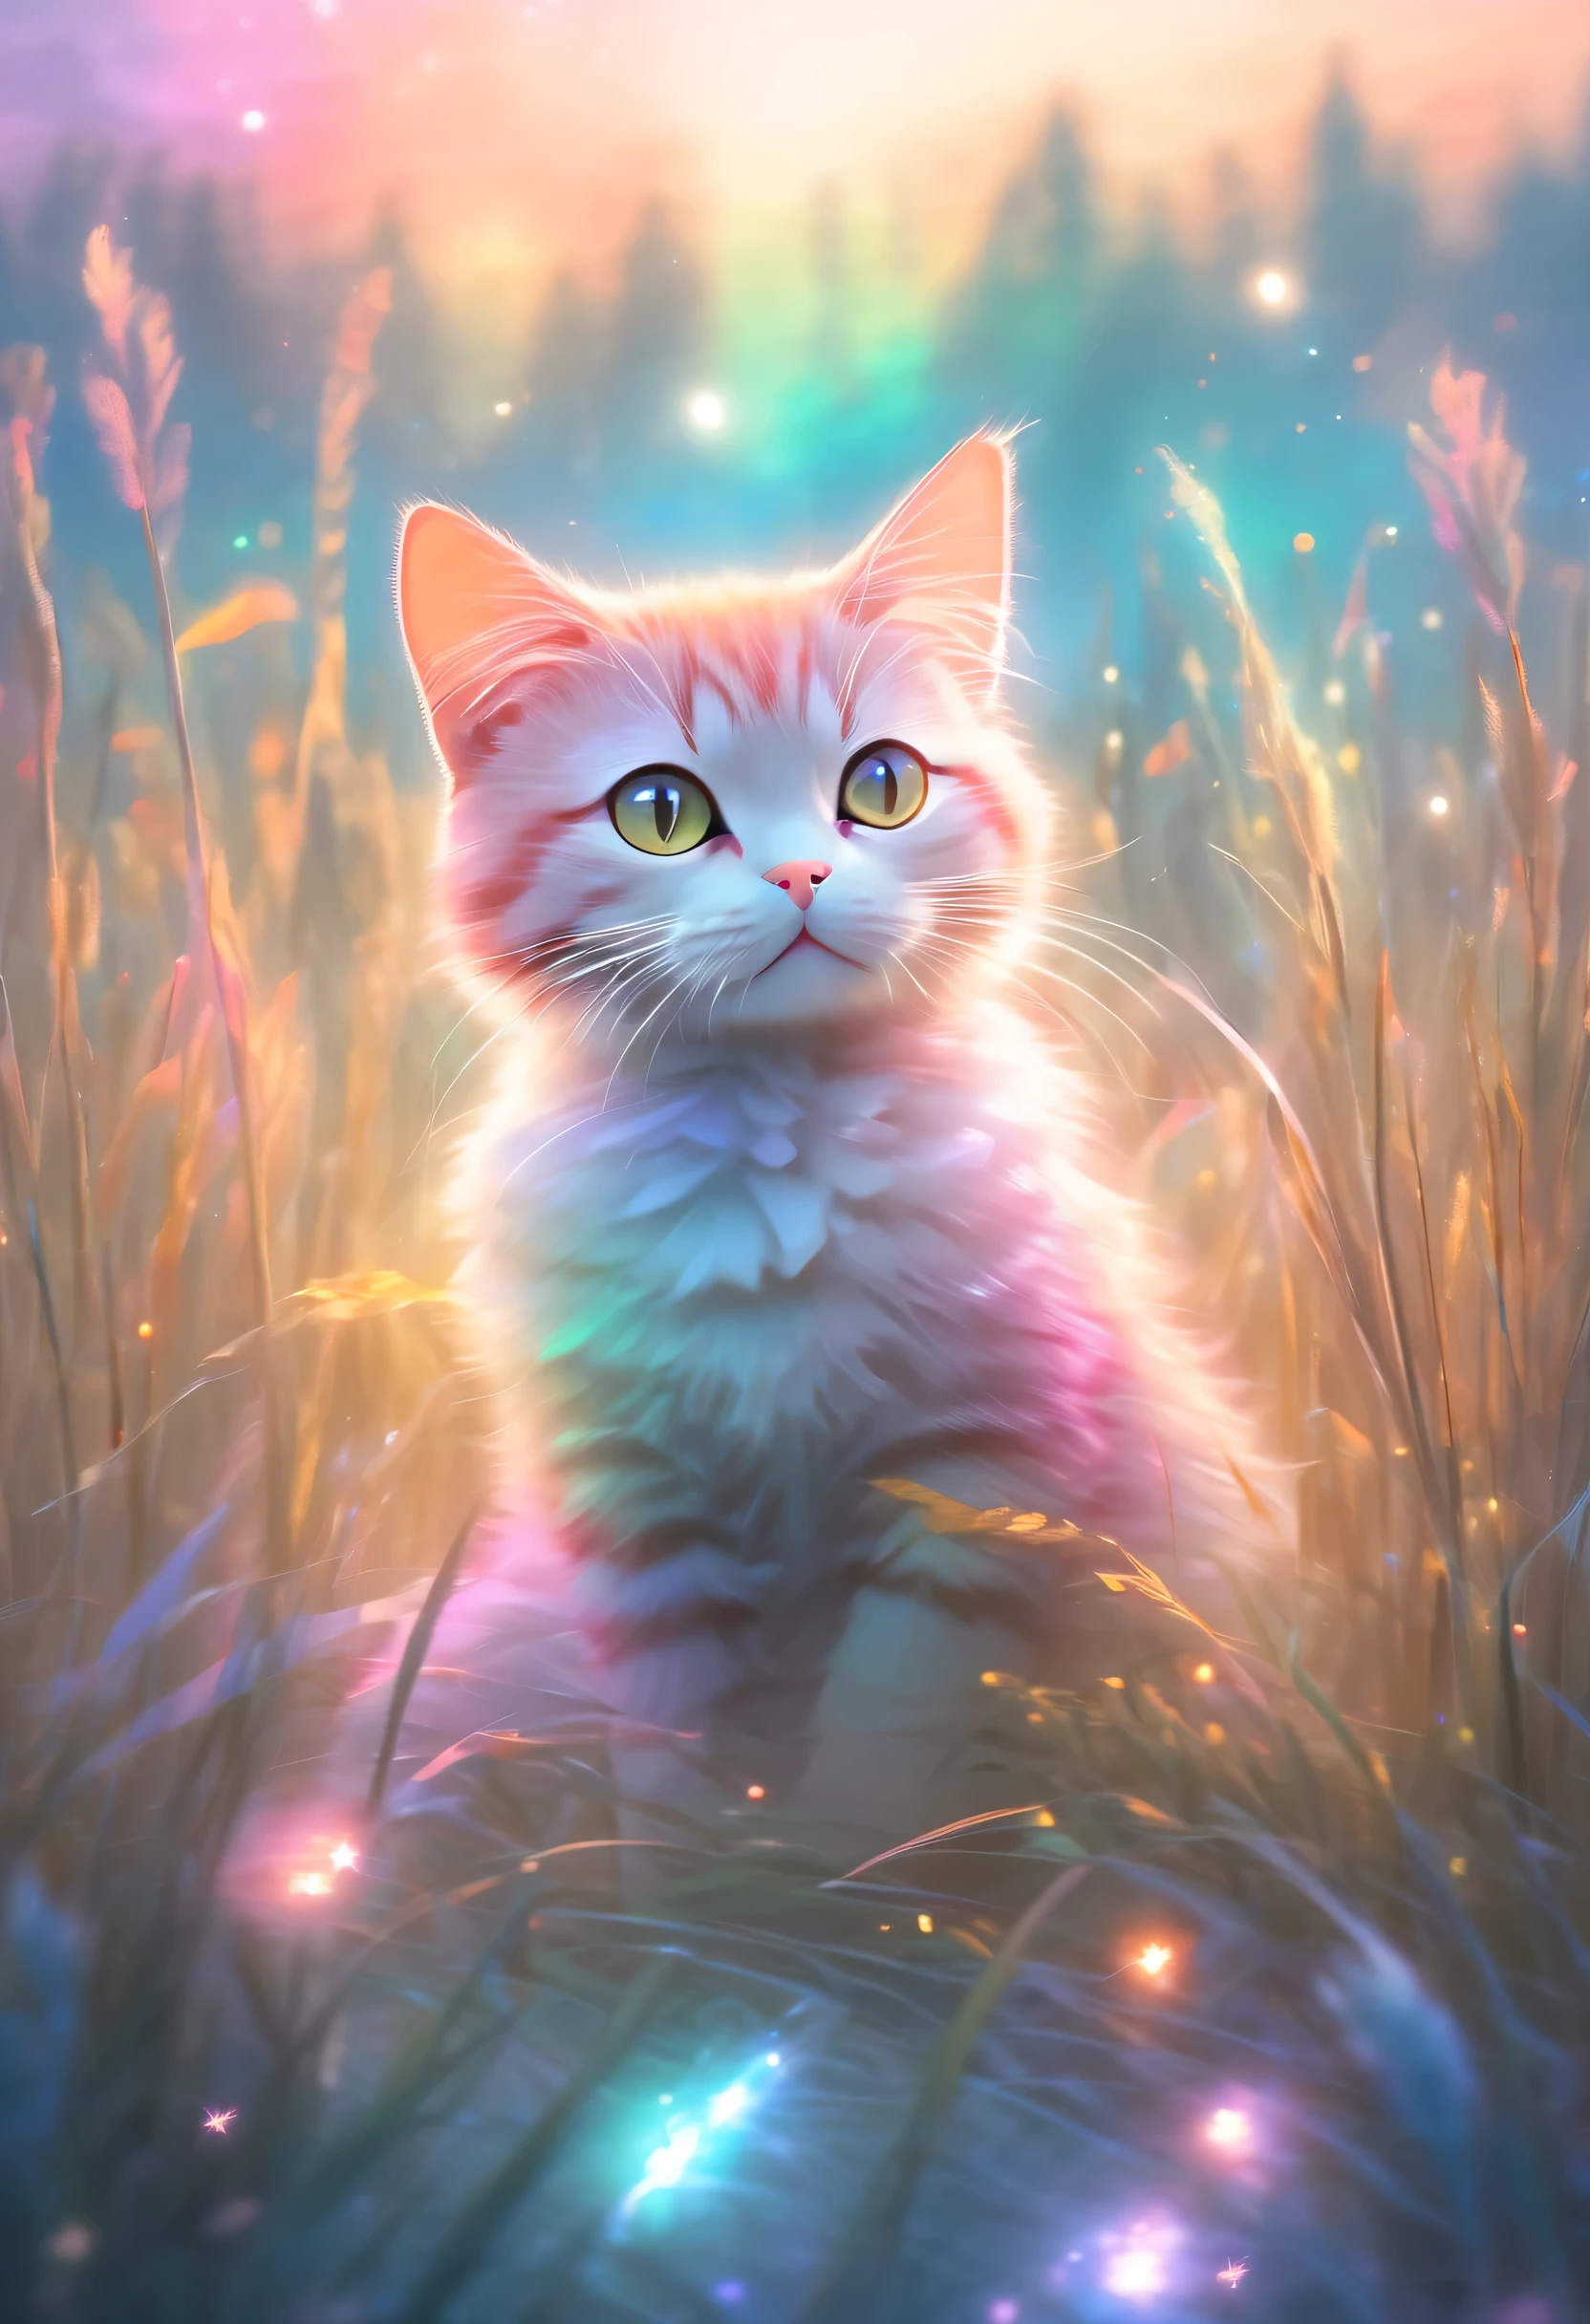 bunt、hell erleuchteter Himmel，Eine Katze sitzt auf einem Feld, umgeben von hohem Gras, Pastellmalerei-Stil, Ätherische Lichteffekte, Leichtes, stimmungsvolles Waldbild,Star Art Troupe (Xing Xing)